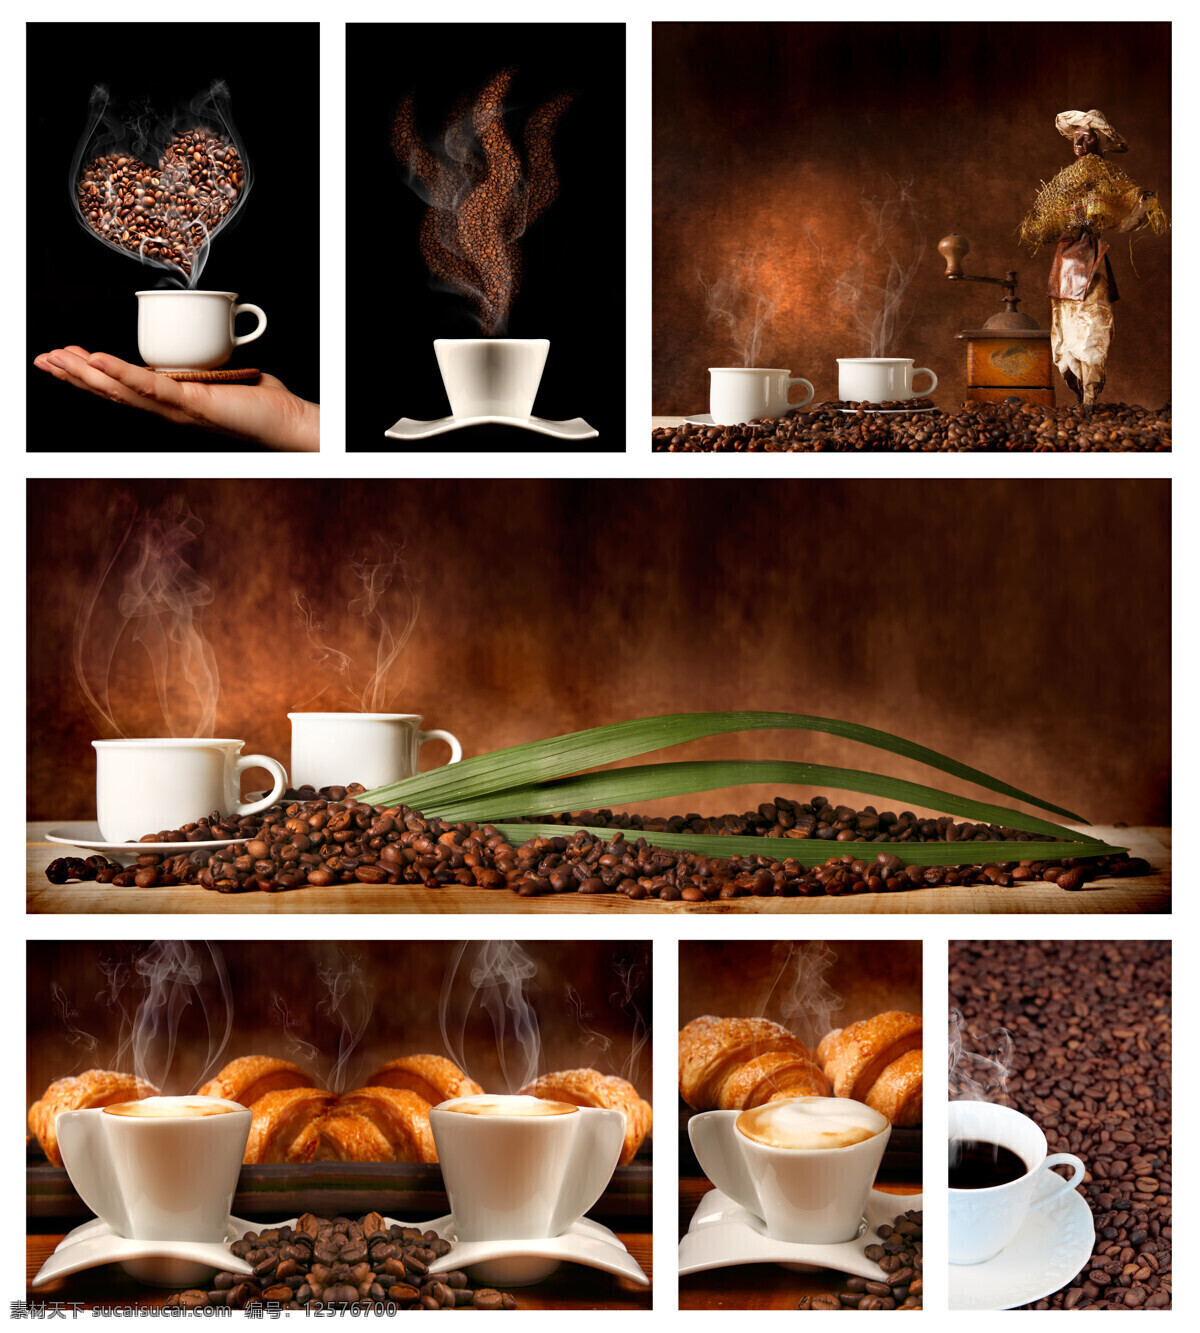 咖啡美食摄影 咖啡 咖啡豆 咖啡杯 面包 热气 绿叶 美食摄影 中华美食 餐饮美食 黑色